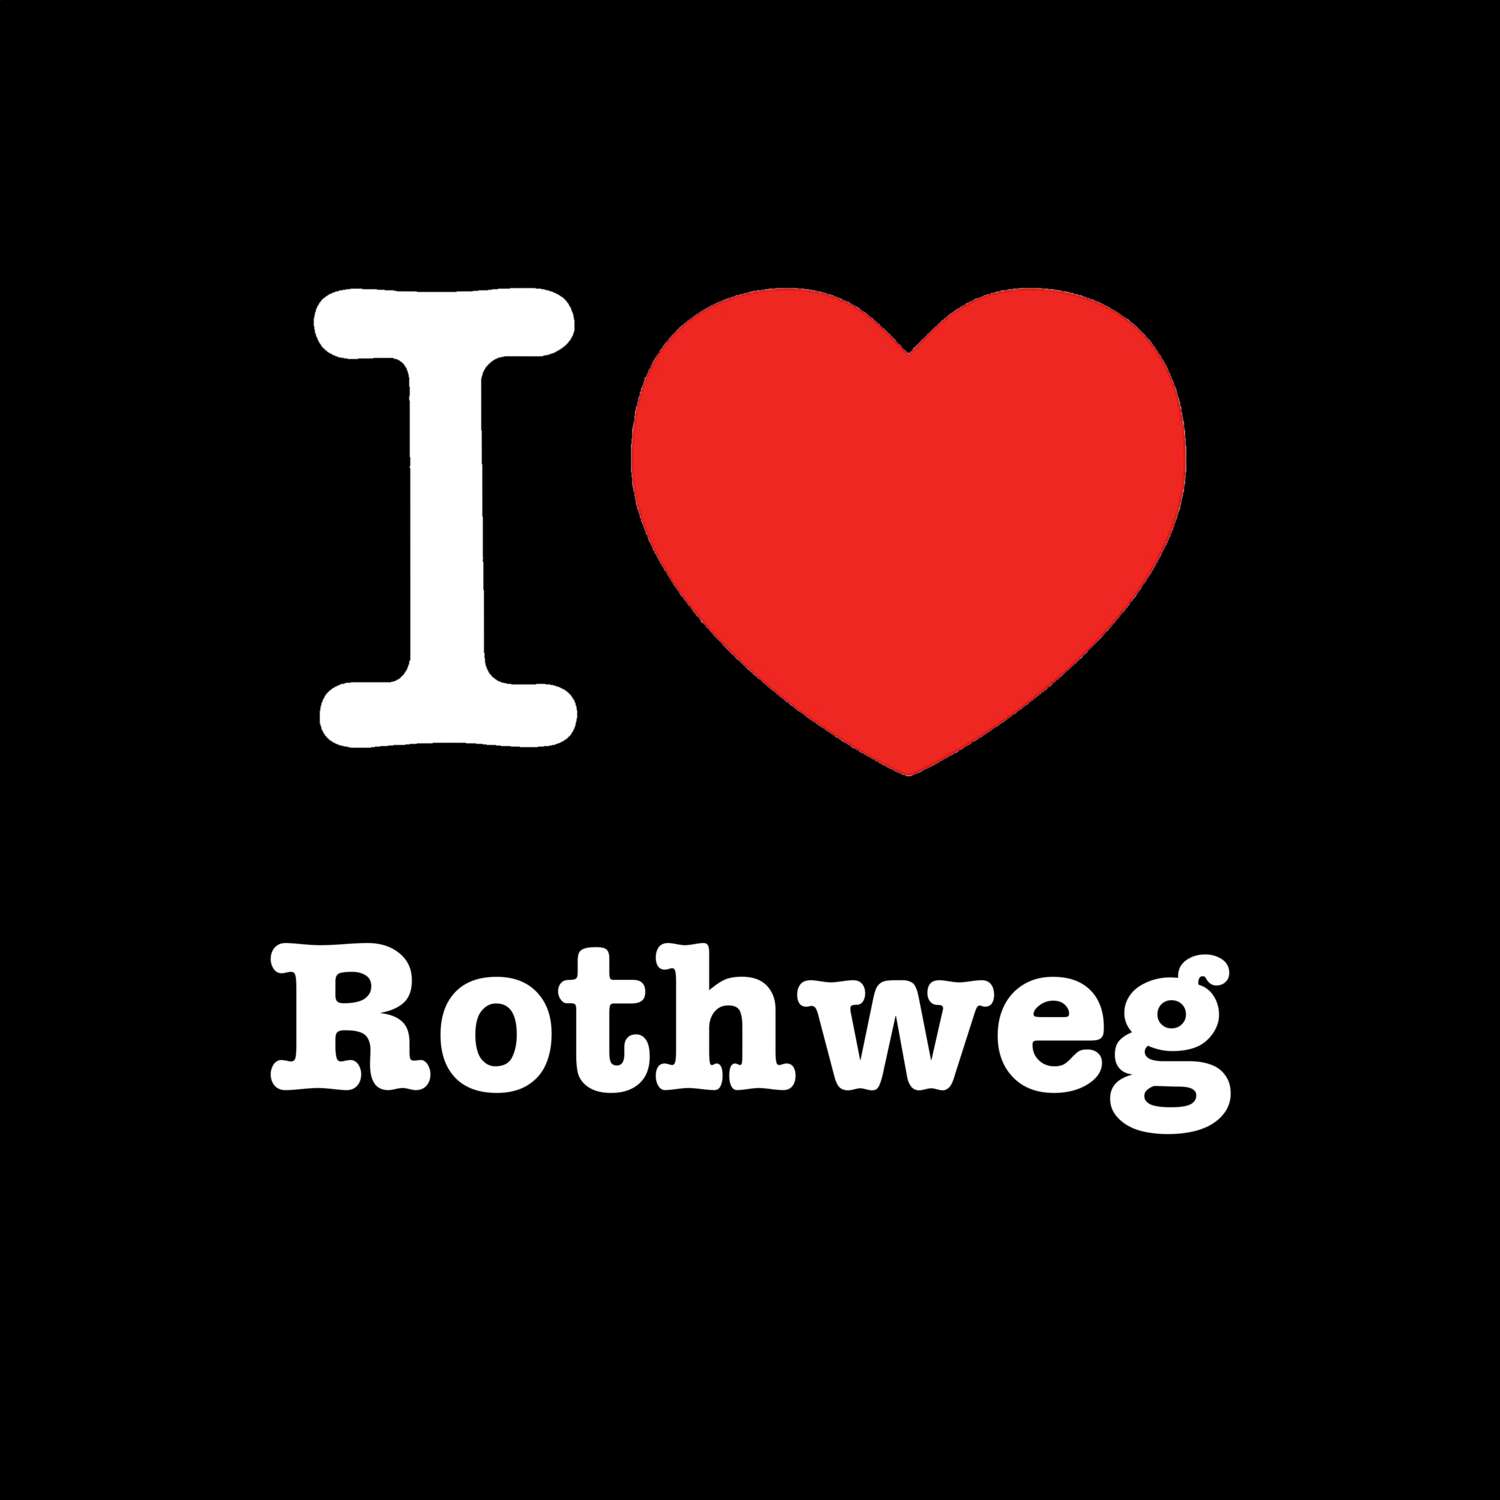 Rothweg T-Shirt »I love«